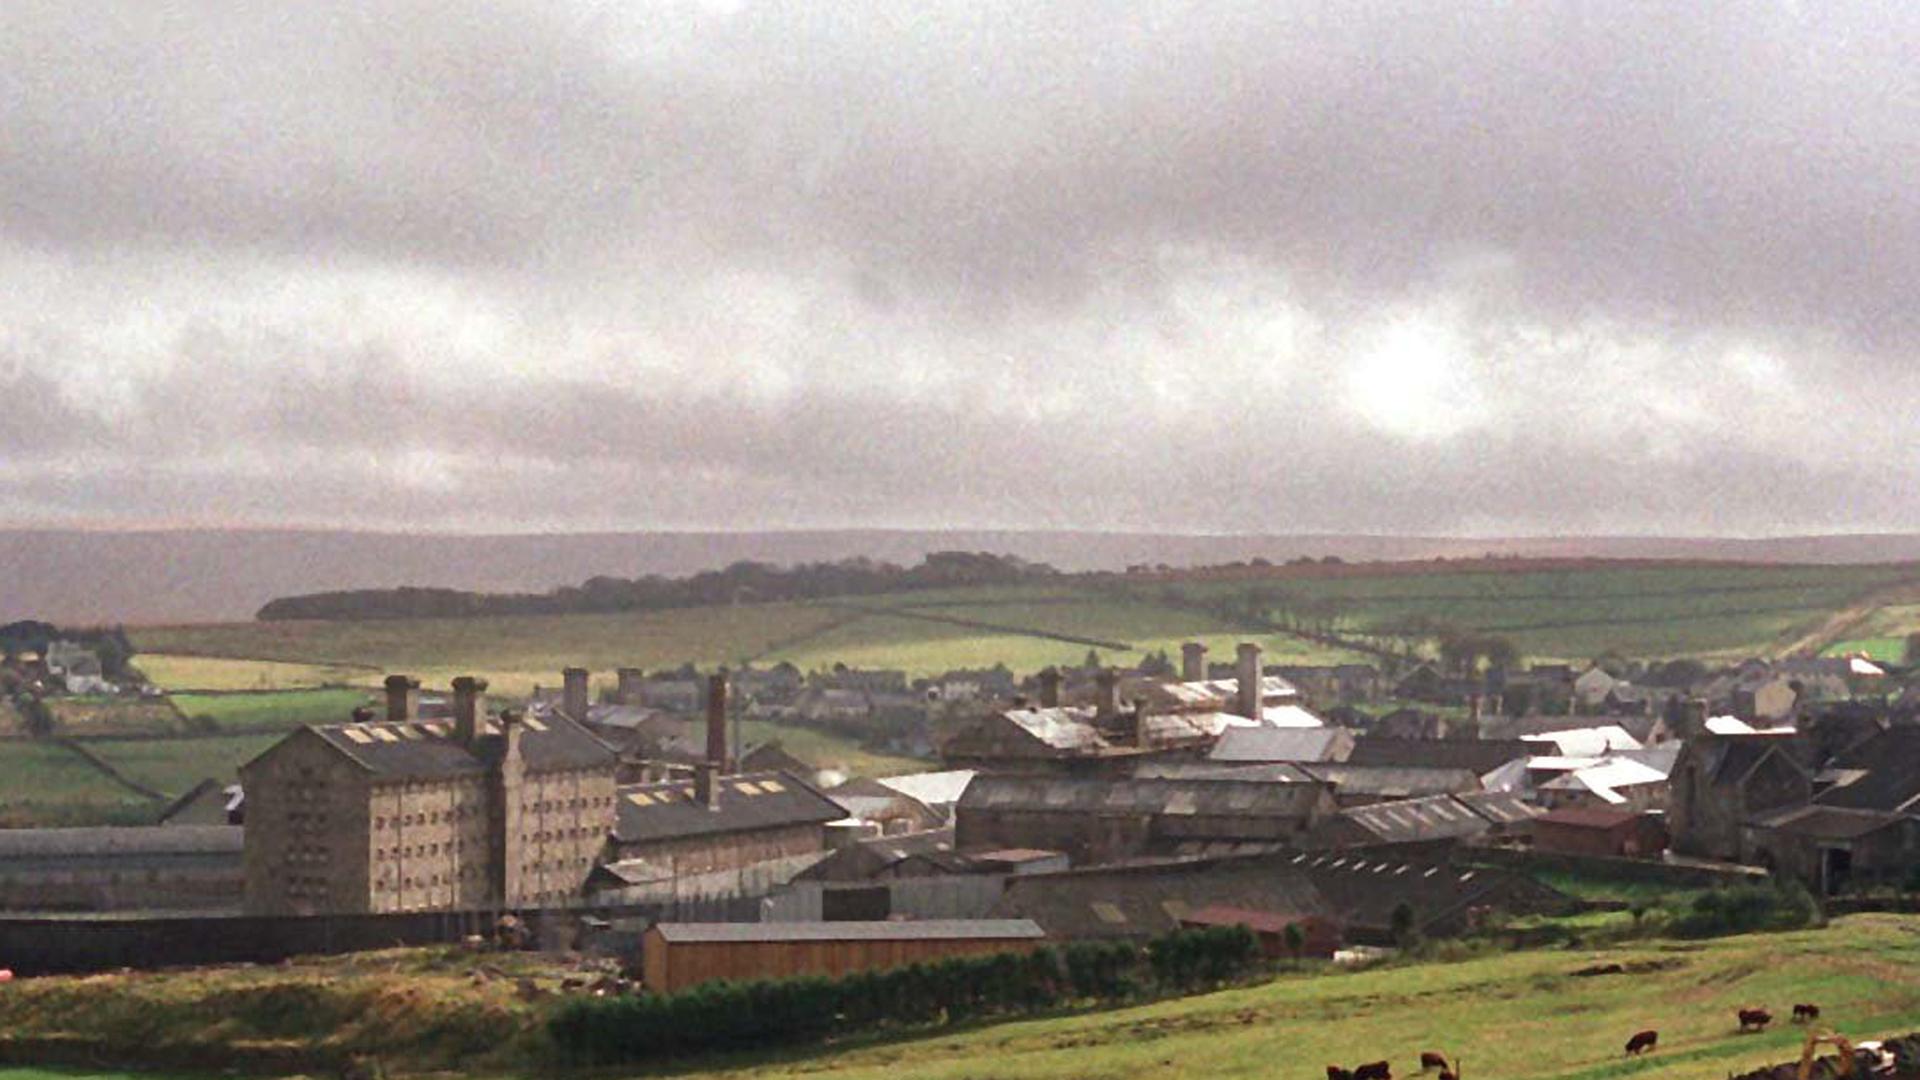 Blick auf das Gefängnis in Dartmoor in der englischen Grafschaft Devon. (Aufnahme vom 15.6.1993).